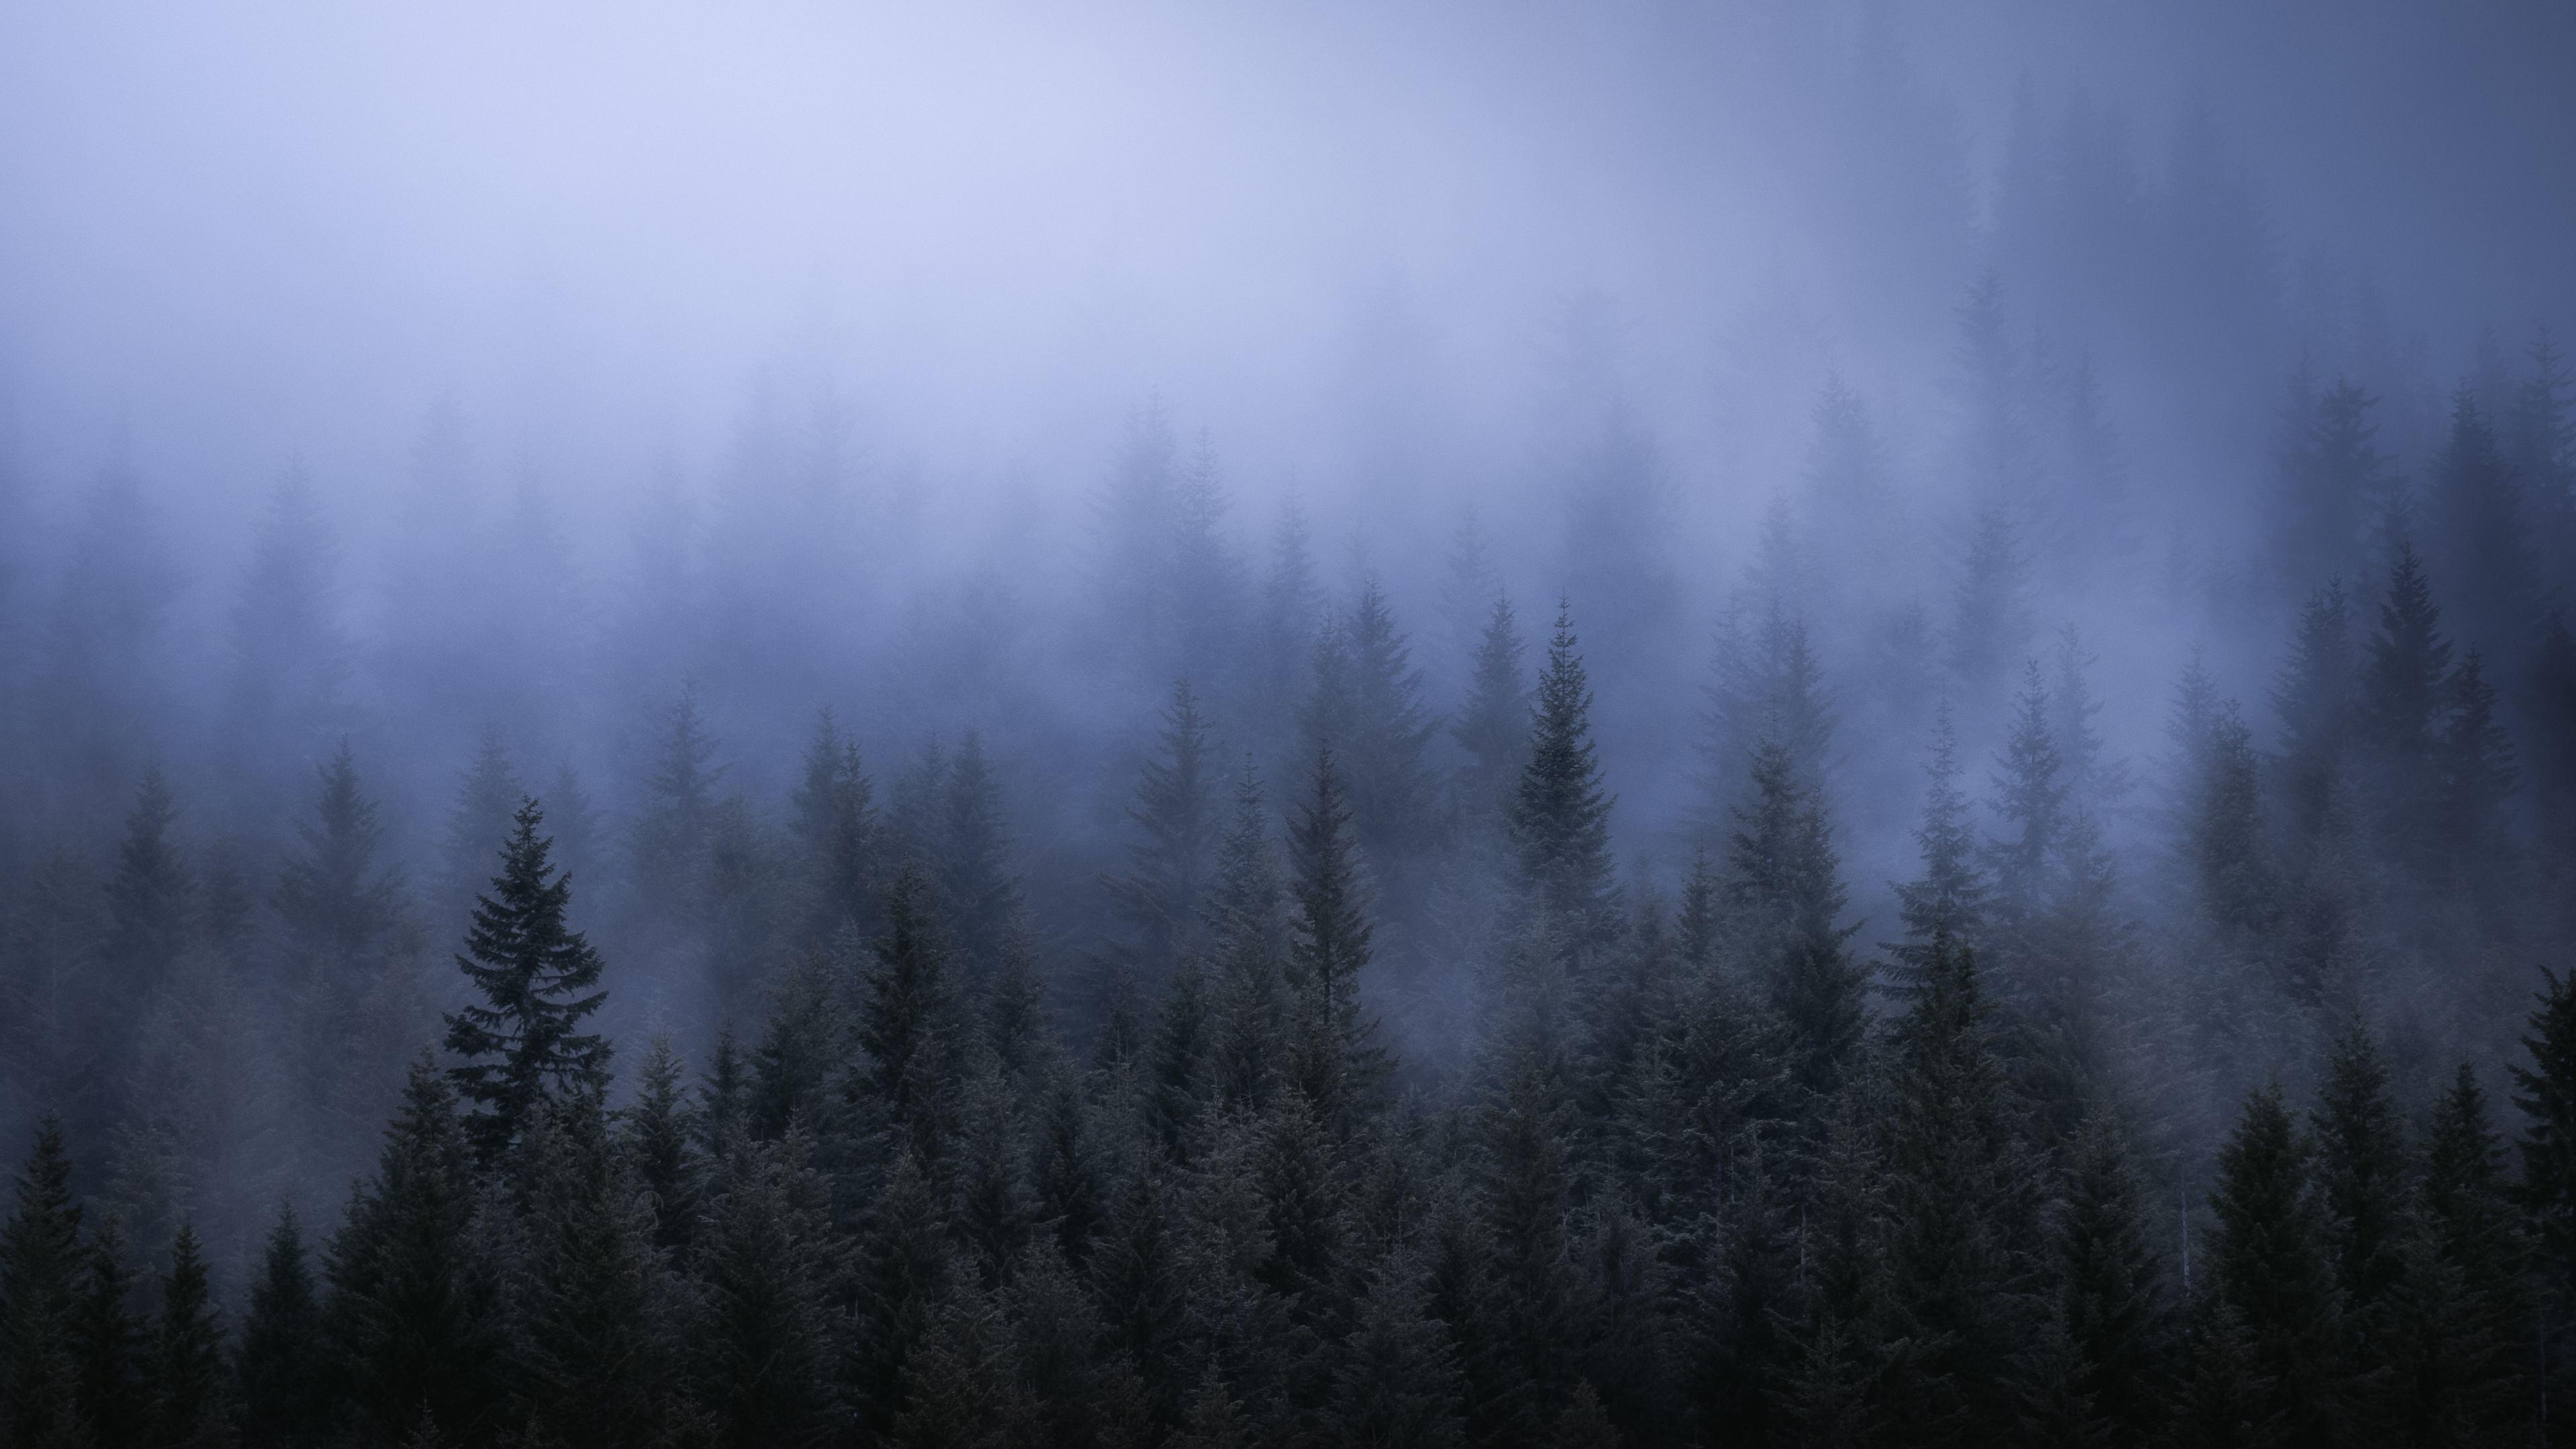 Wallpaper 4k Fog Dark Forest Tress Landscape 5k 4k Wallpaper, 5k